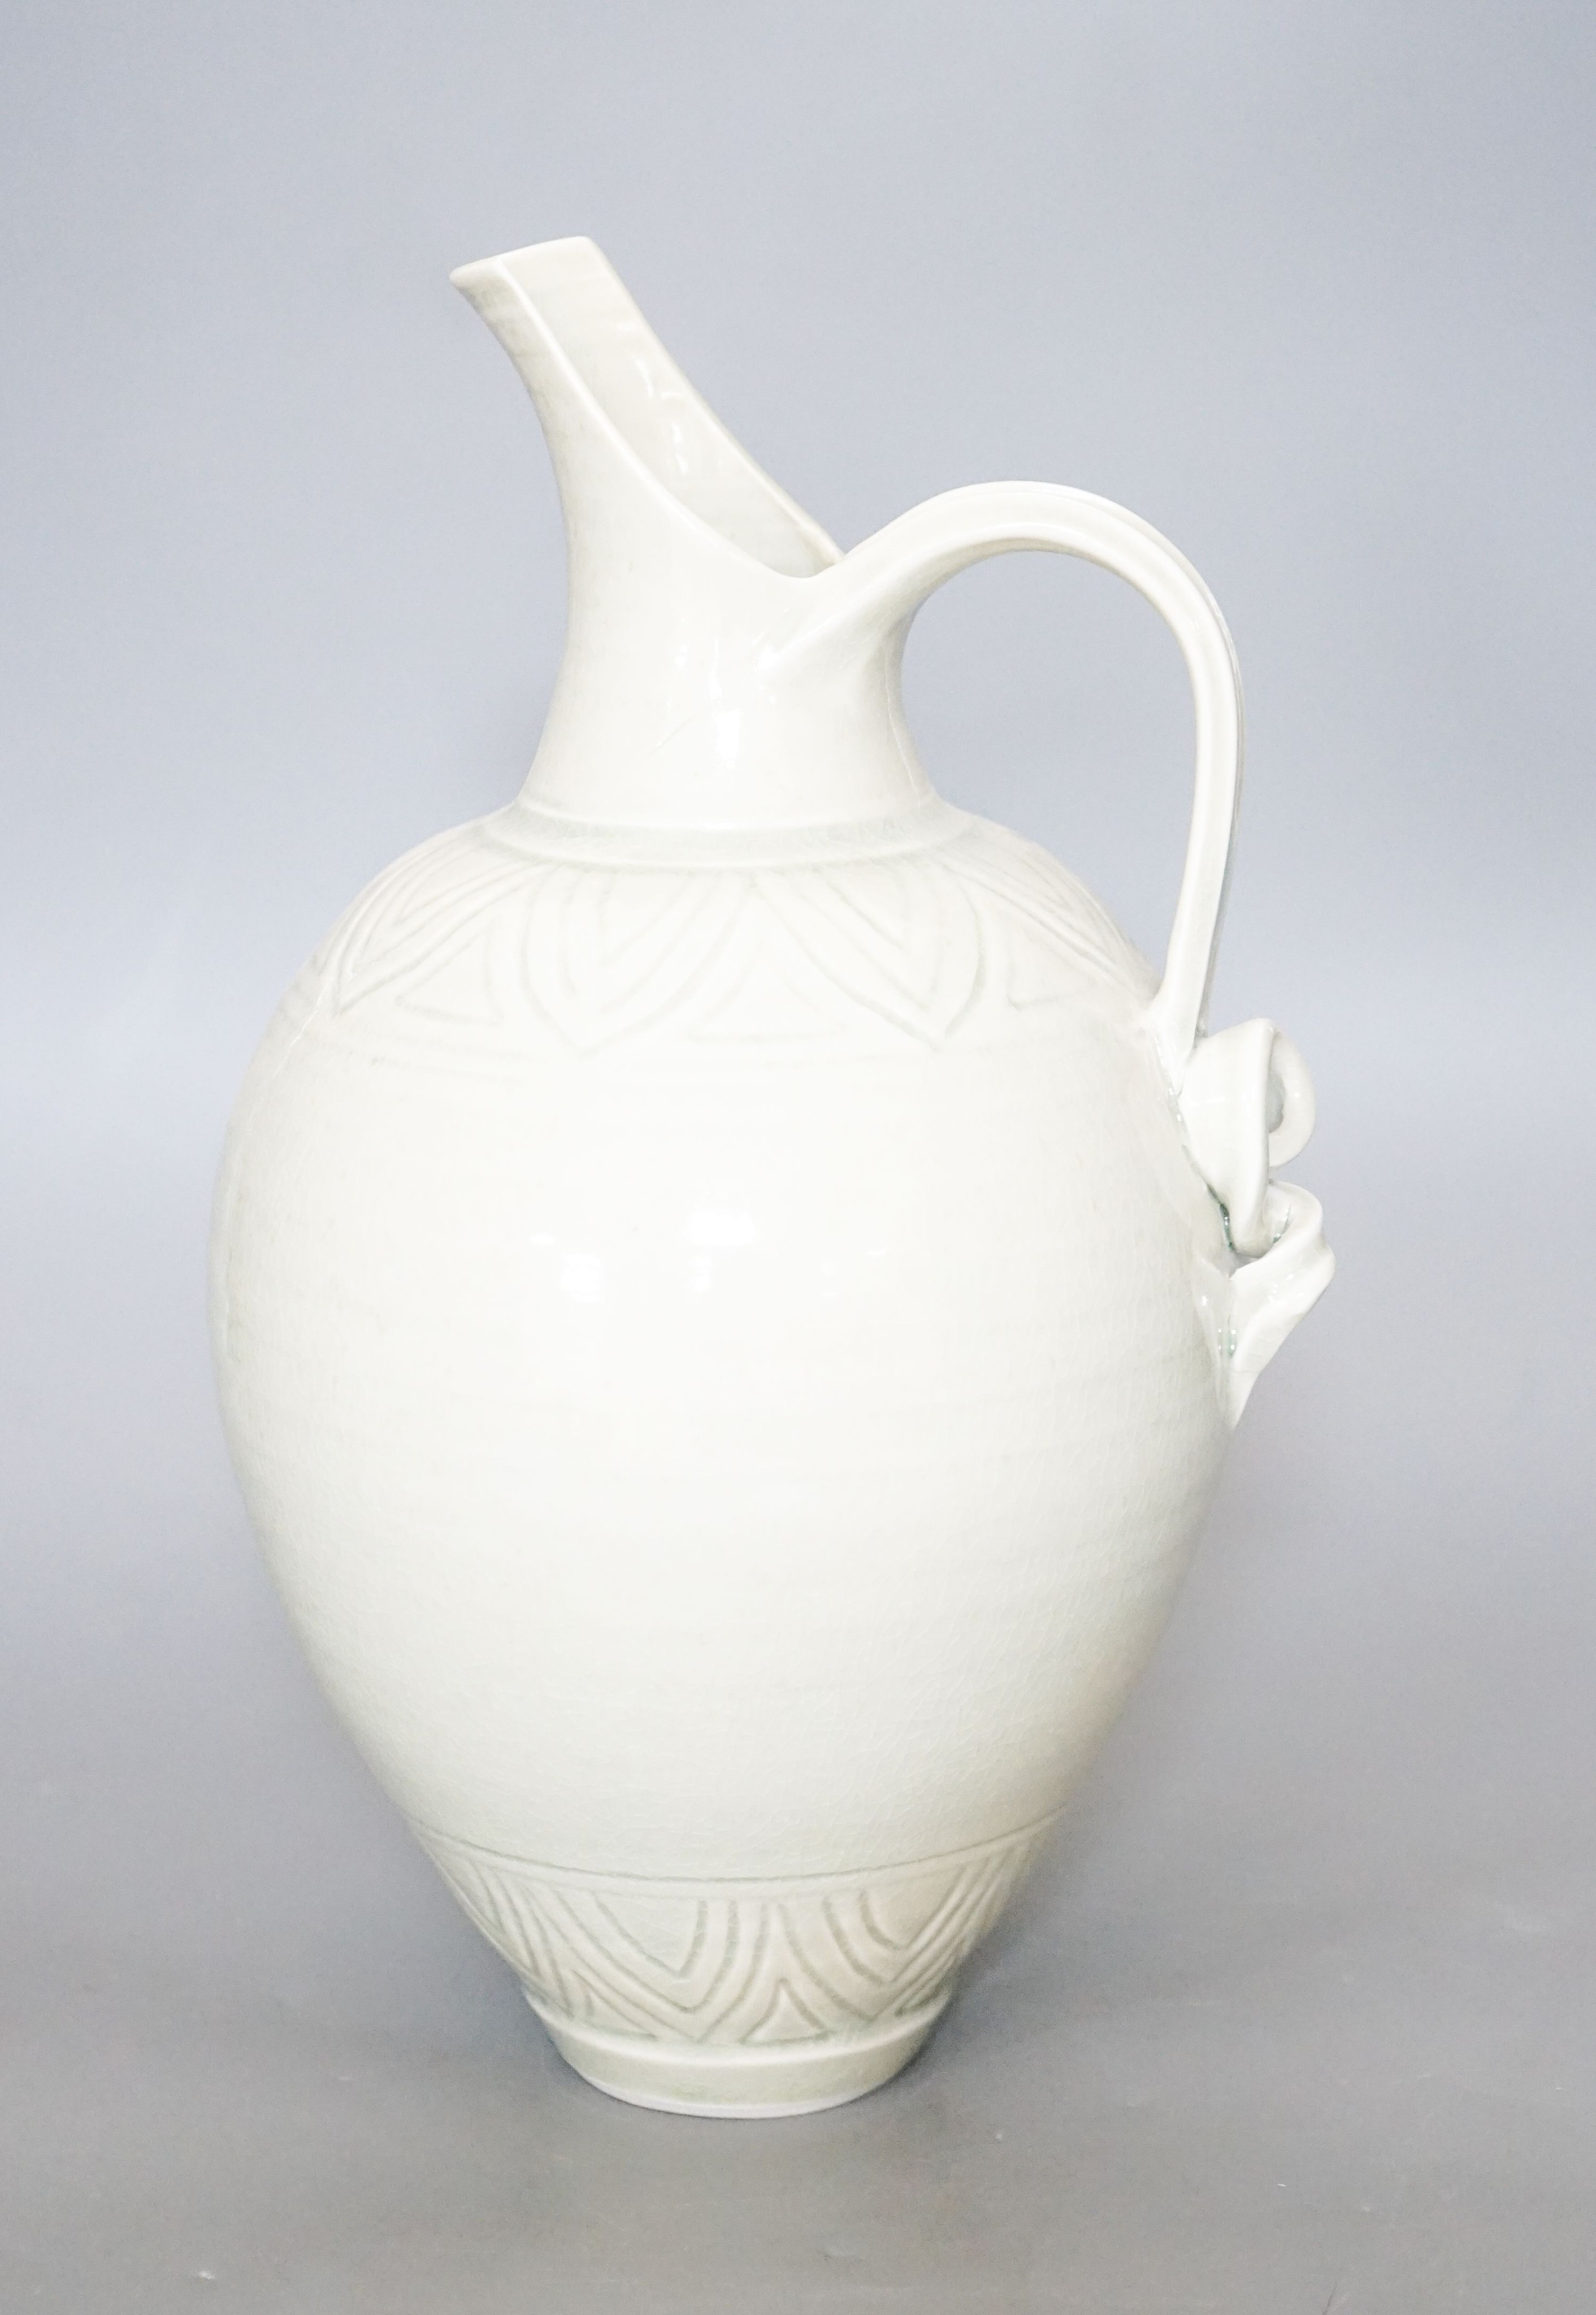 Bridget Drakeford (b.1946), a celadon glazed porcelain jug30cm